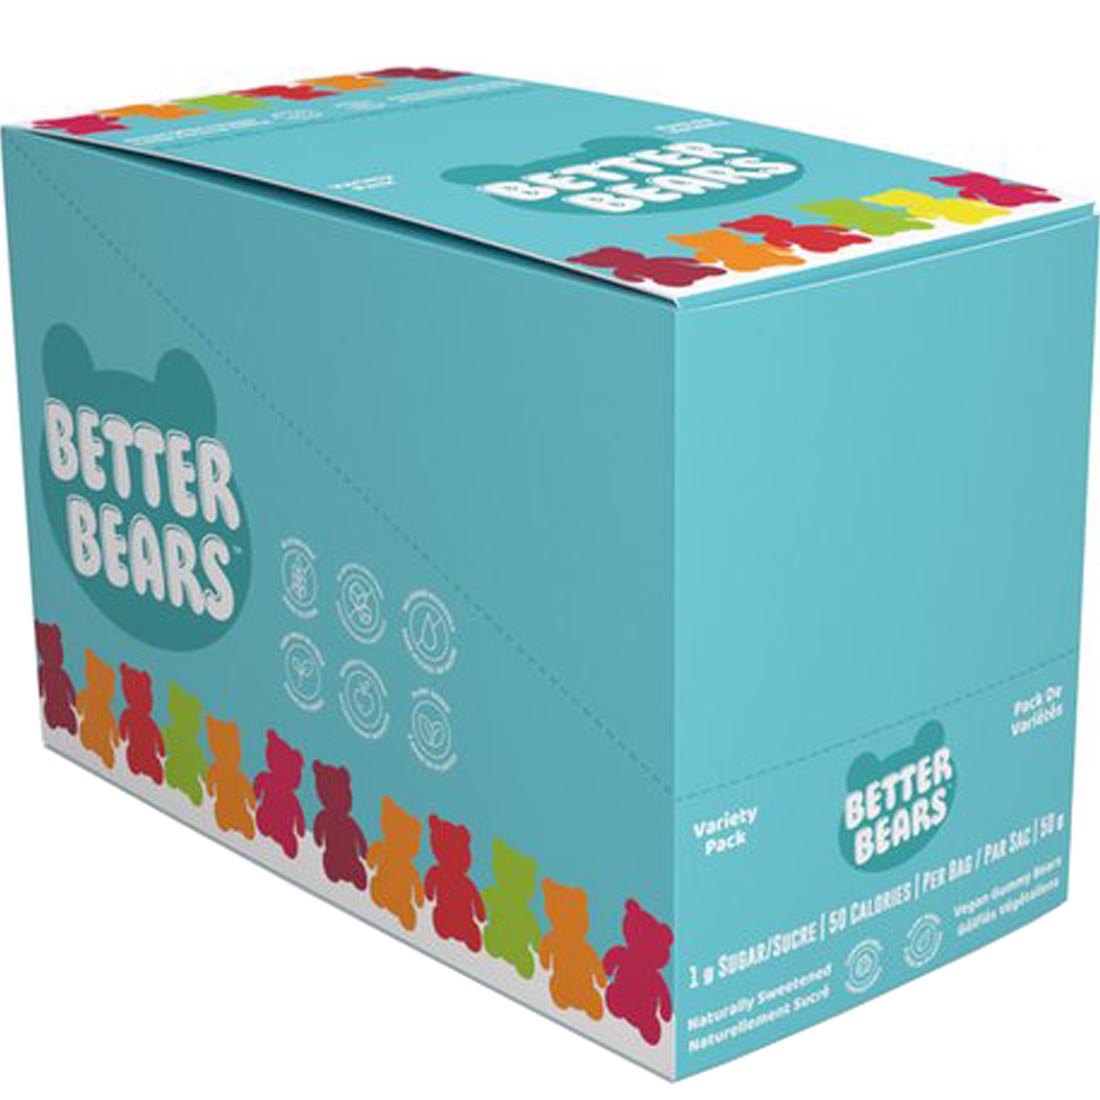 Better Bears Variety Pack - Gummy Bears